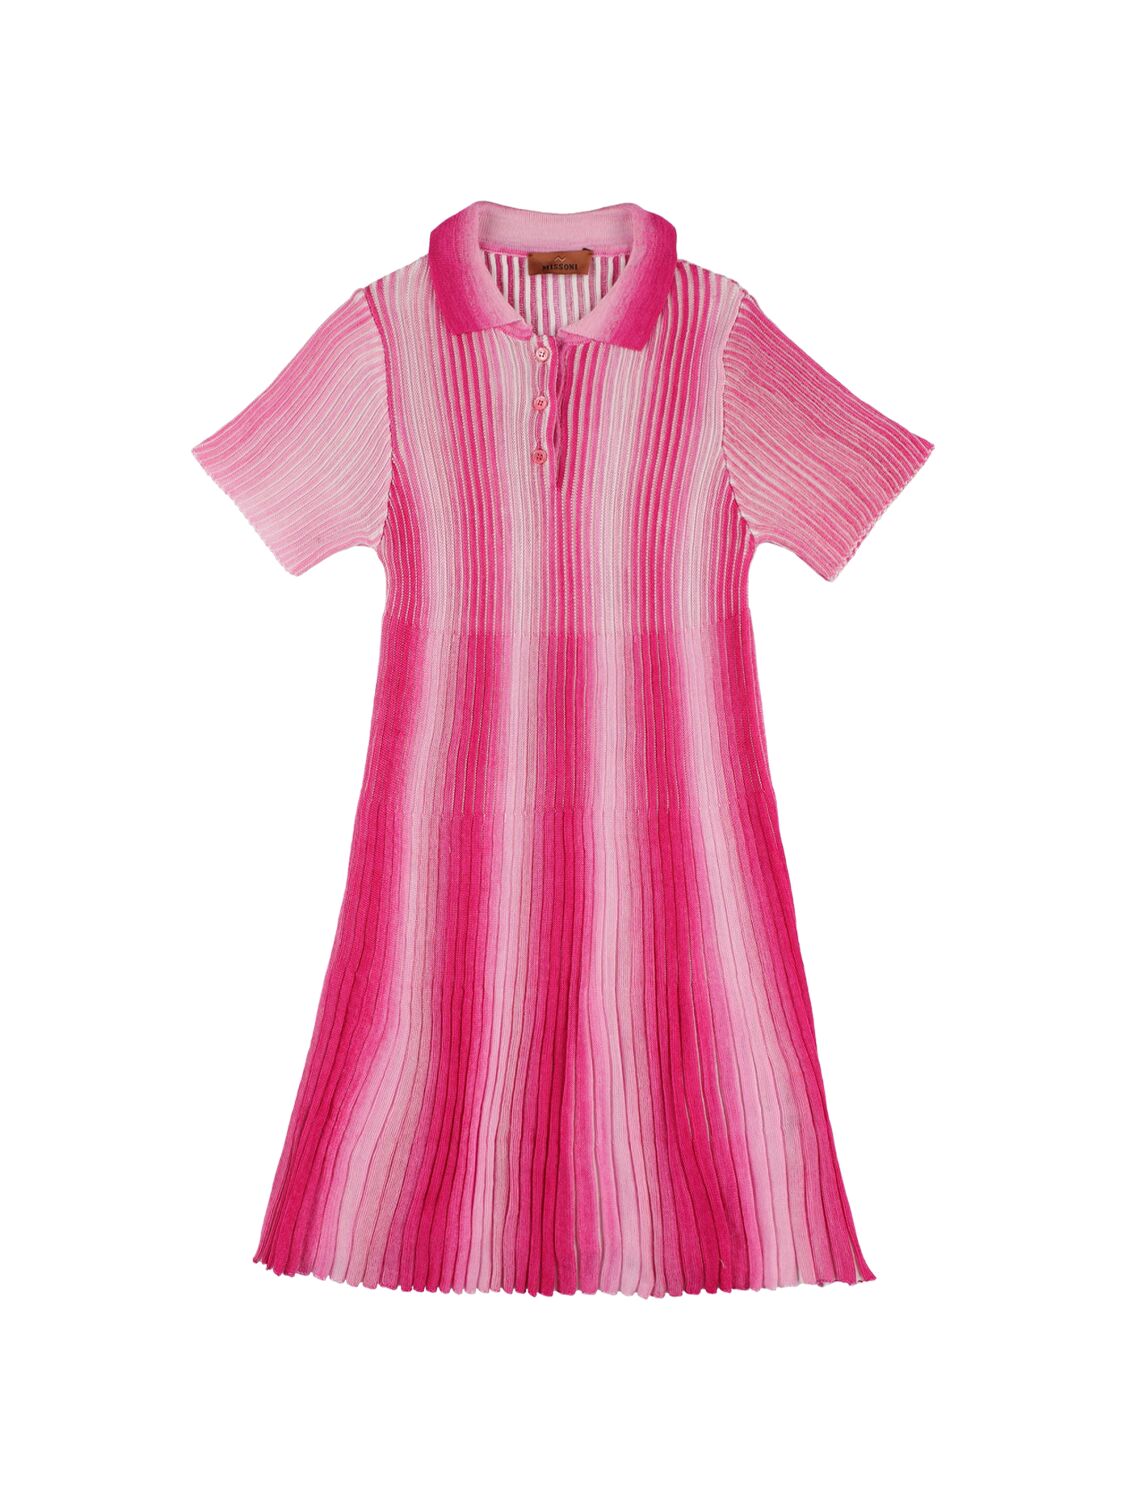 Missoni Kids' Viscose Knit Dress In Pink